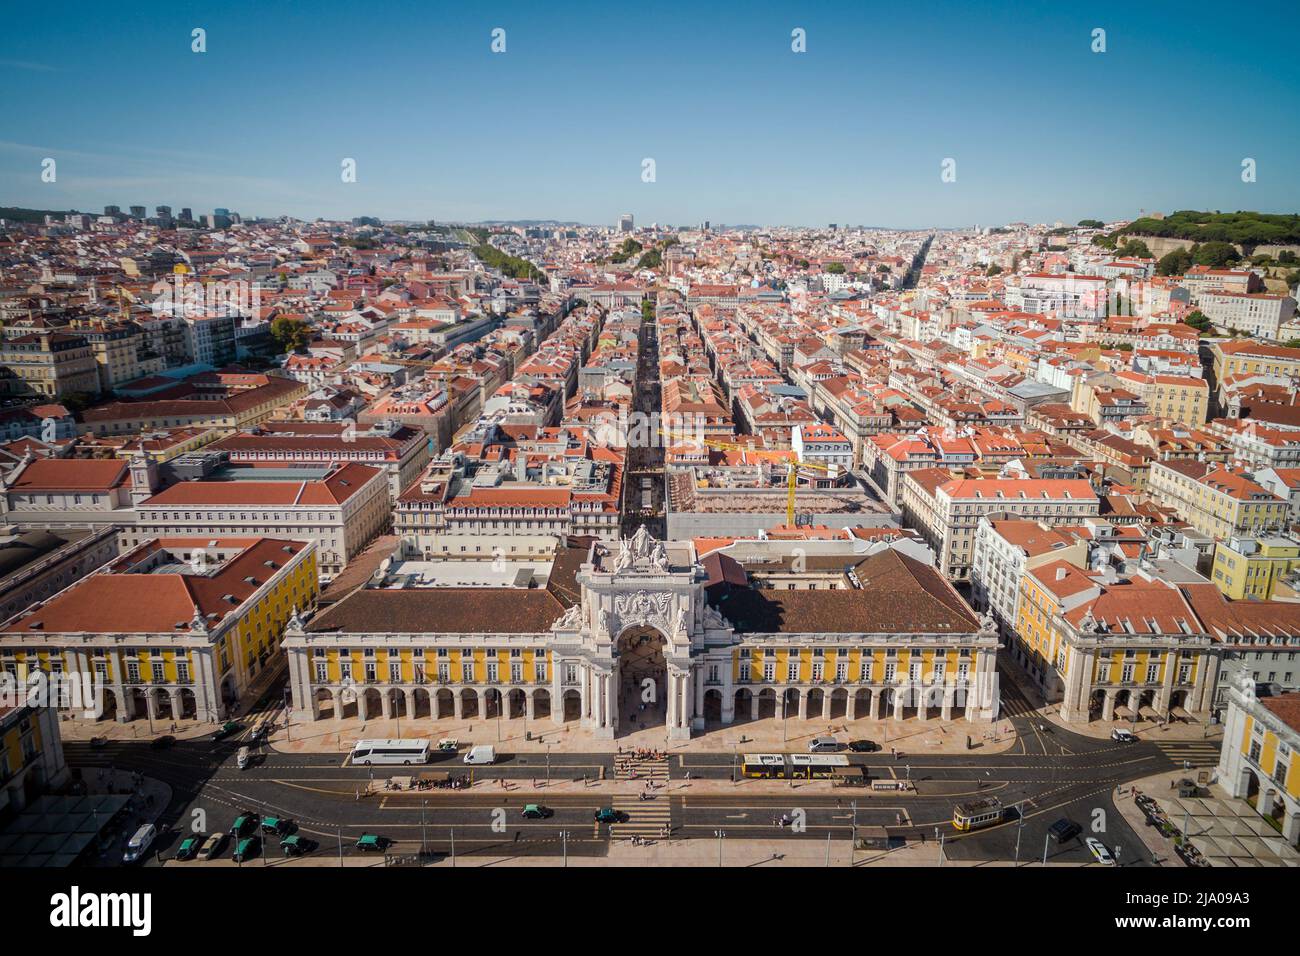 Aerial view of Comercio Square in Lisbon, Portugal. Stock Photo